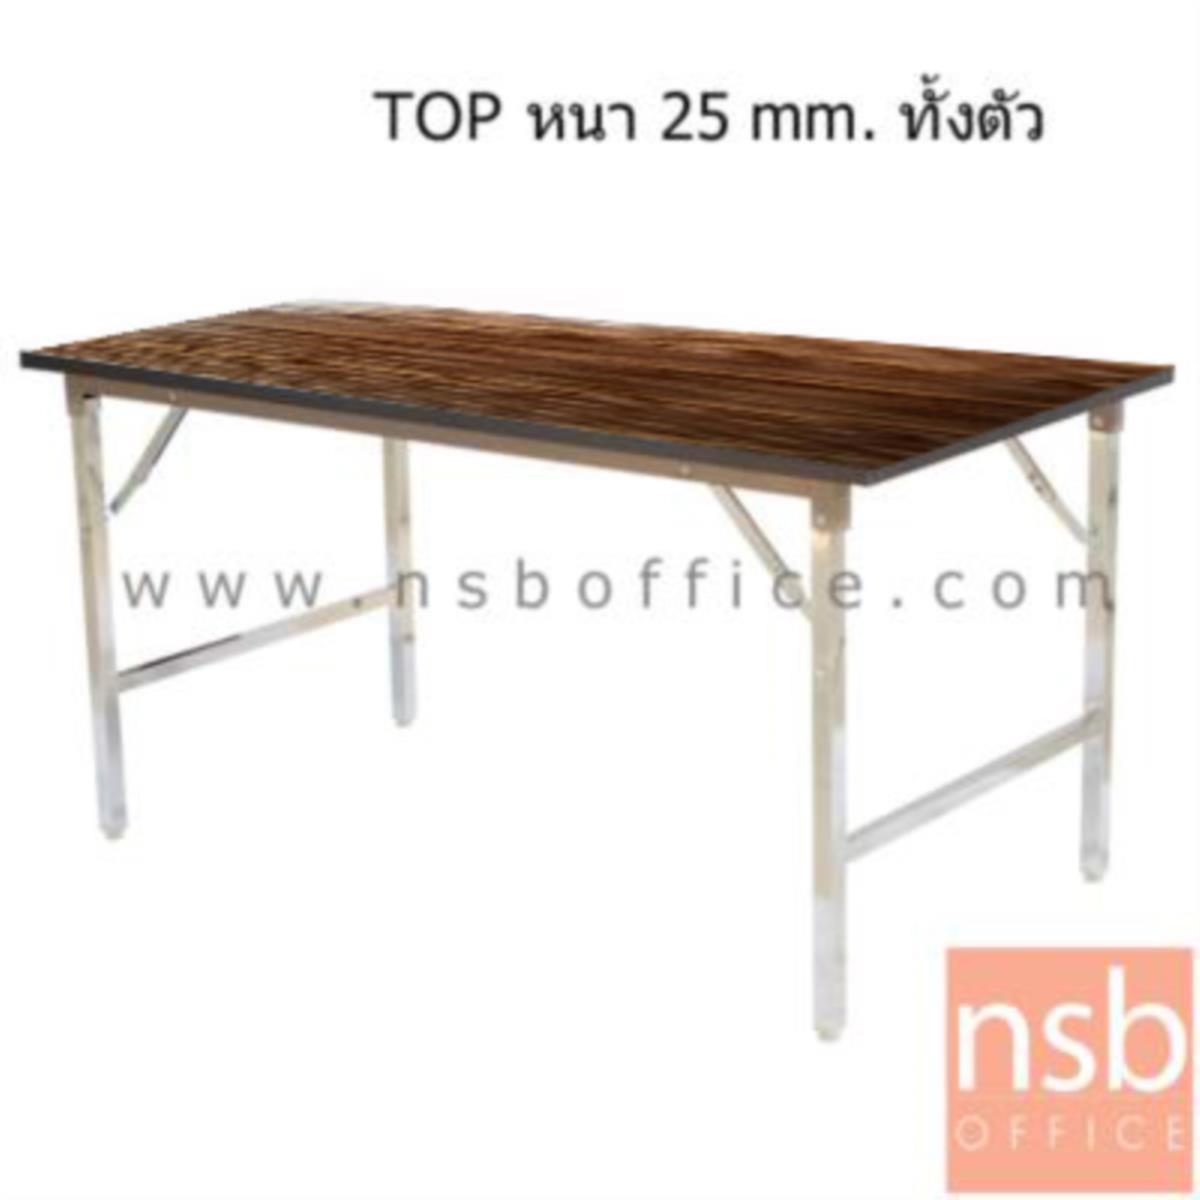 โต๊ะพับหน้าโฟเมก้าลายไม้ รุ่น navut (นาวุต)  